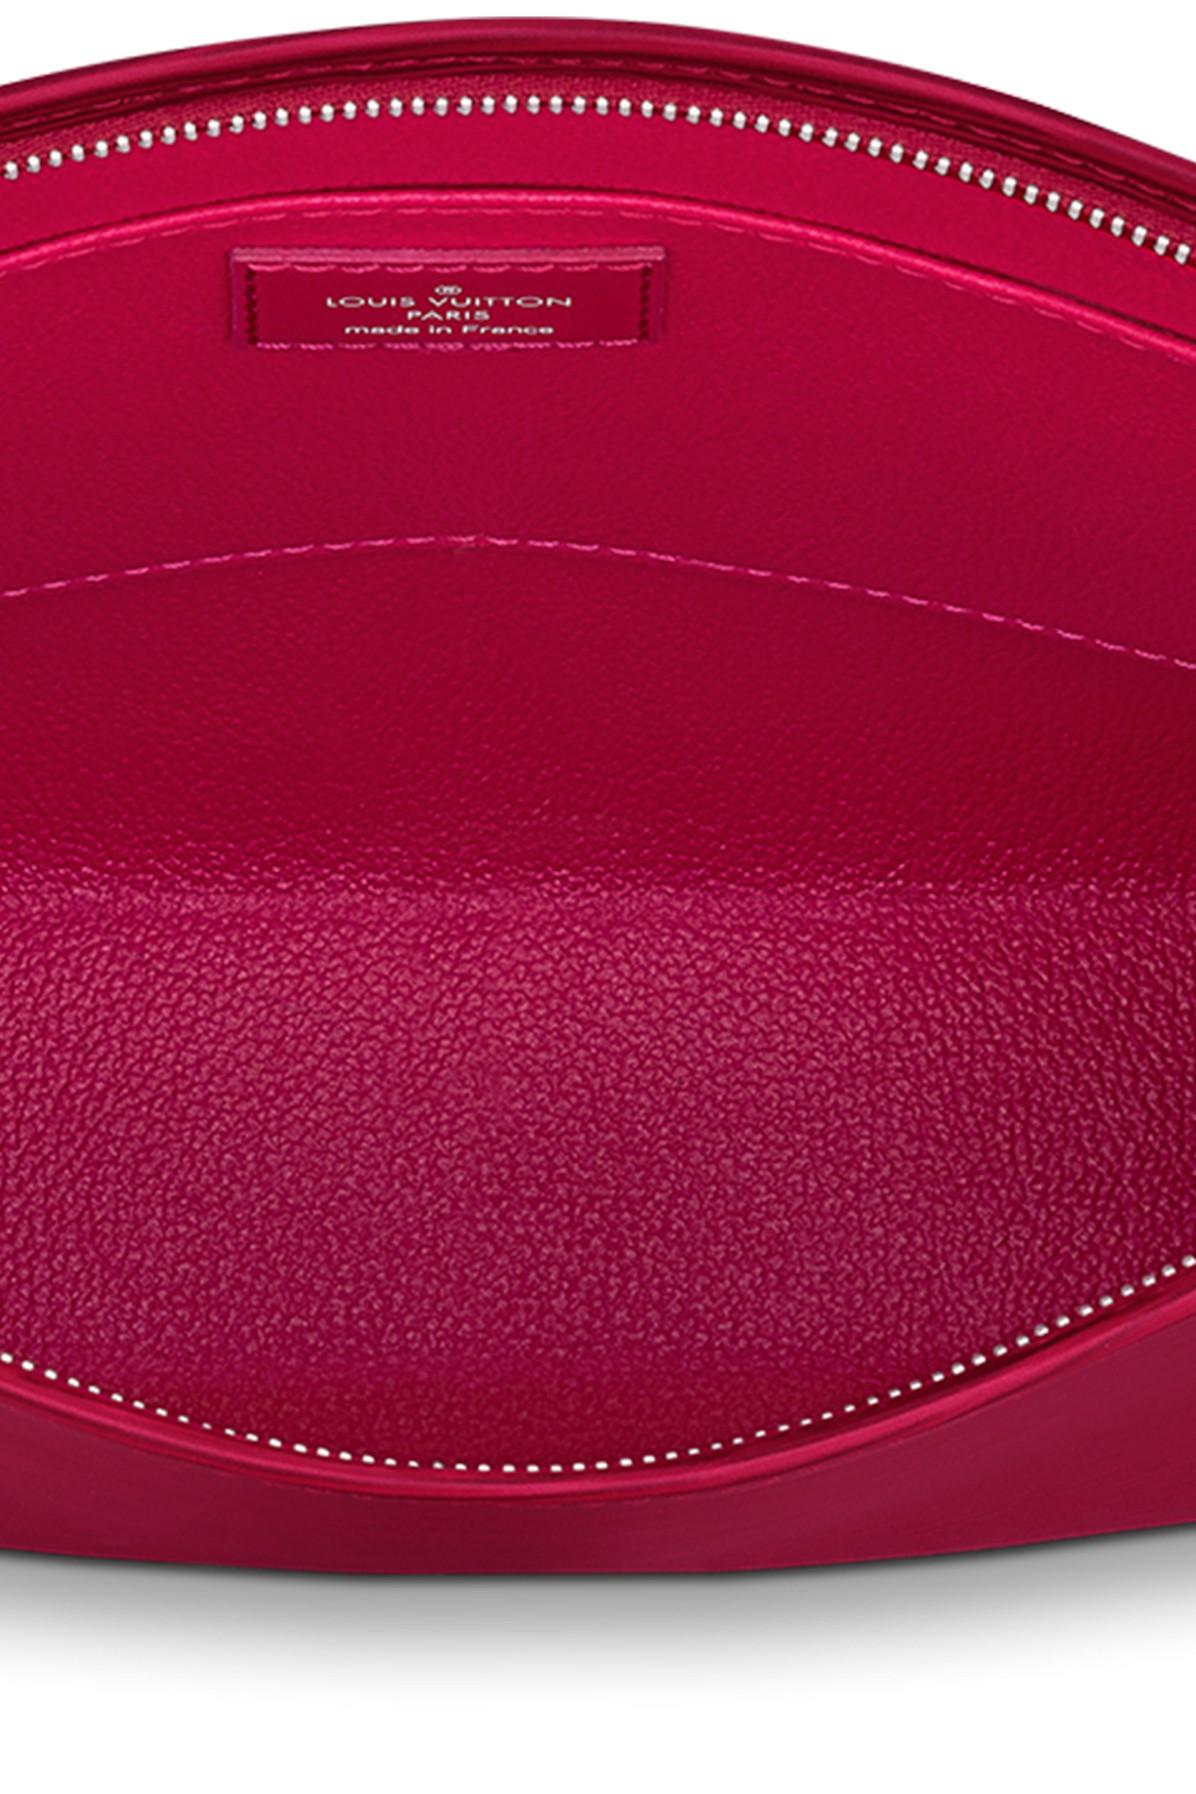 Louis Vuitton Fuchsia Epi Leather Toiletry 26 Cosmetic Pouch